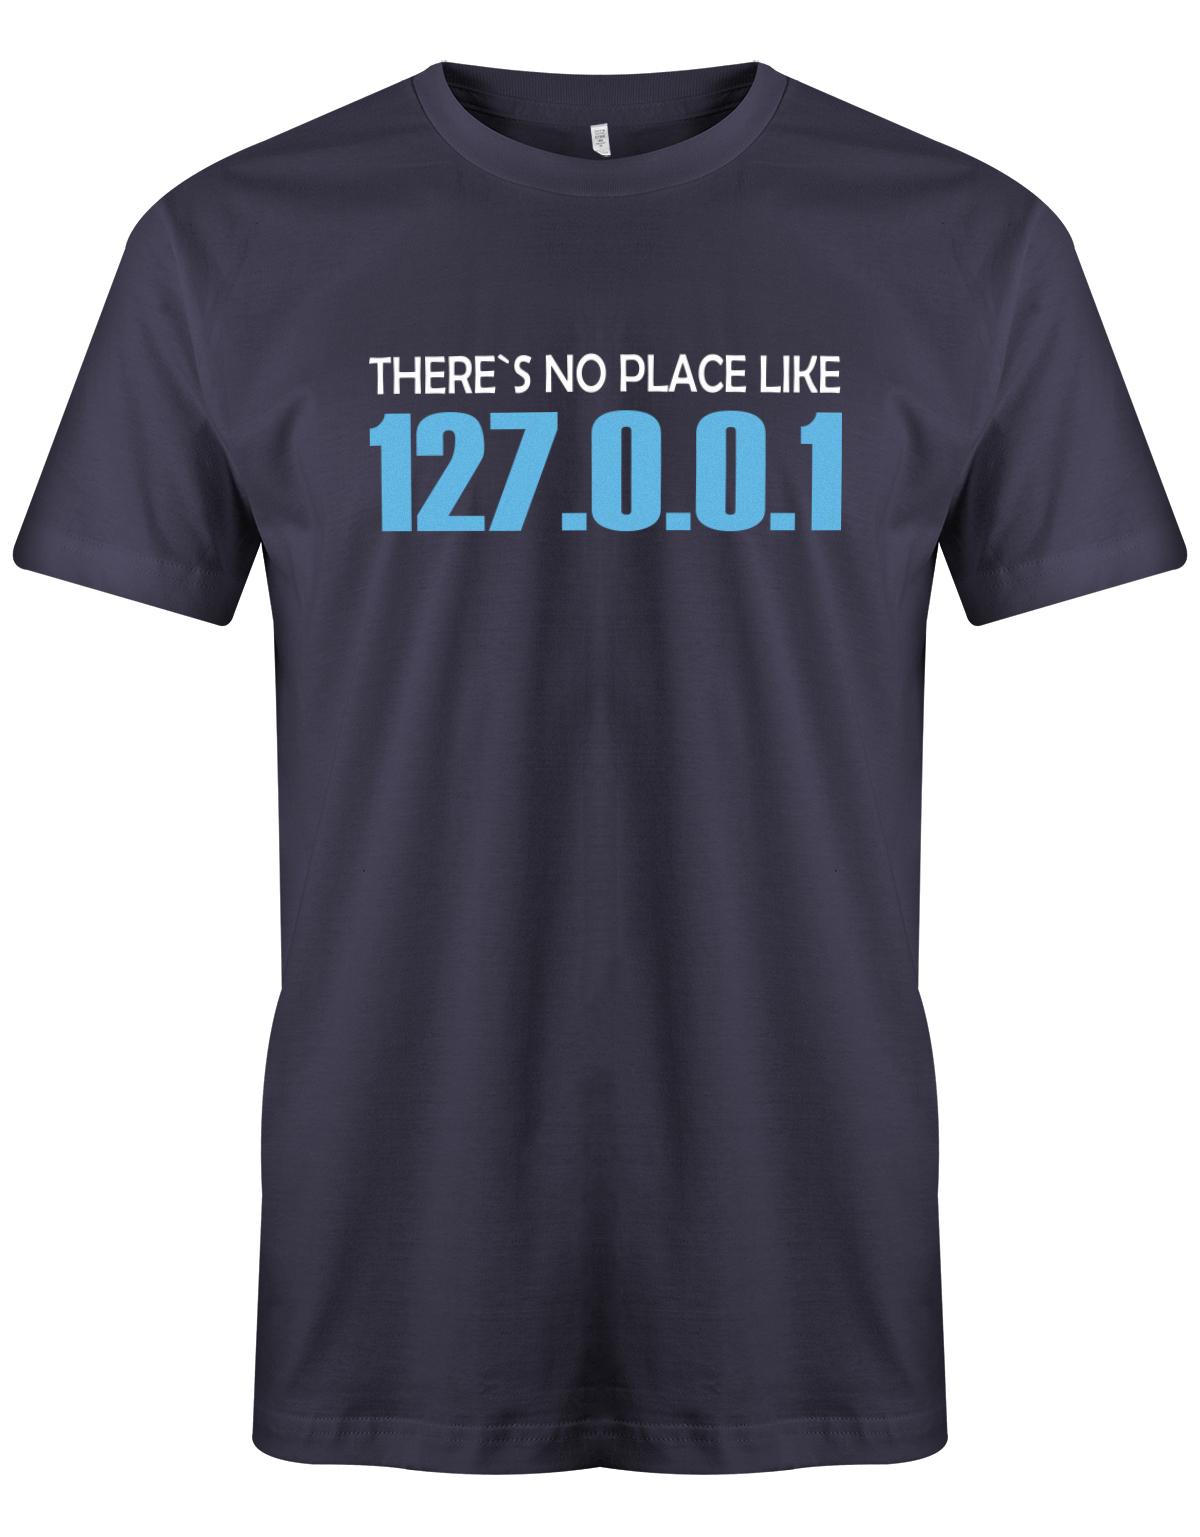 Theres-no-palce-like-127001-Herren-Shirt-Navy